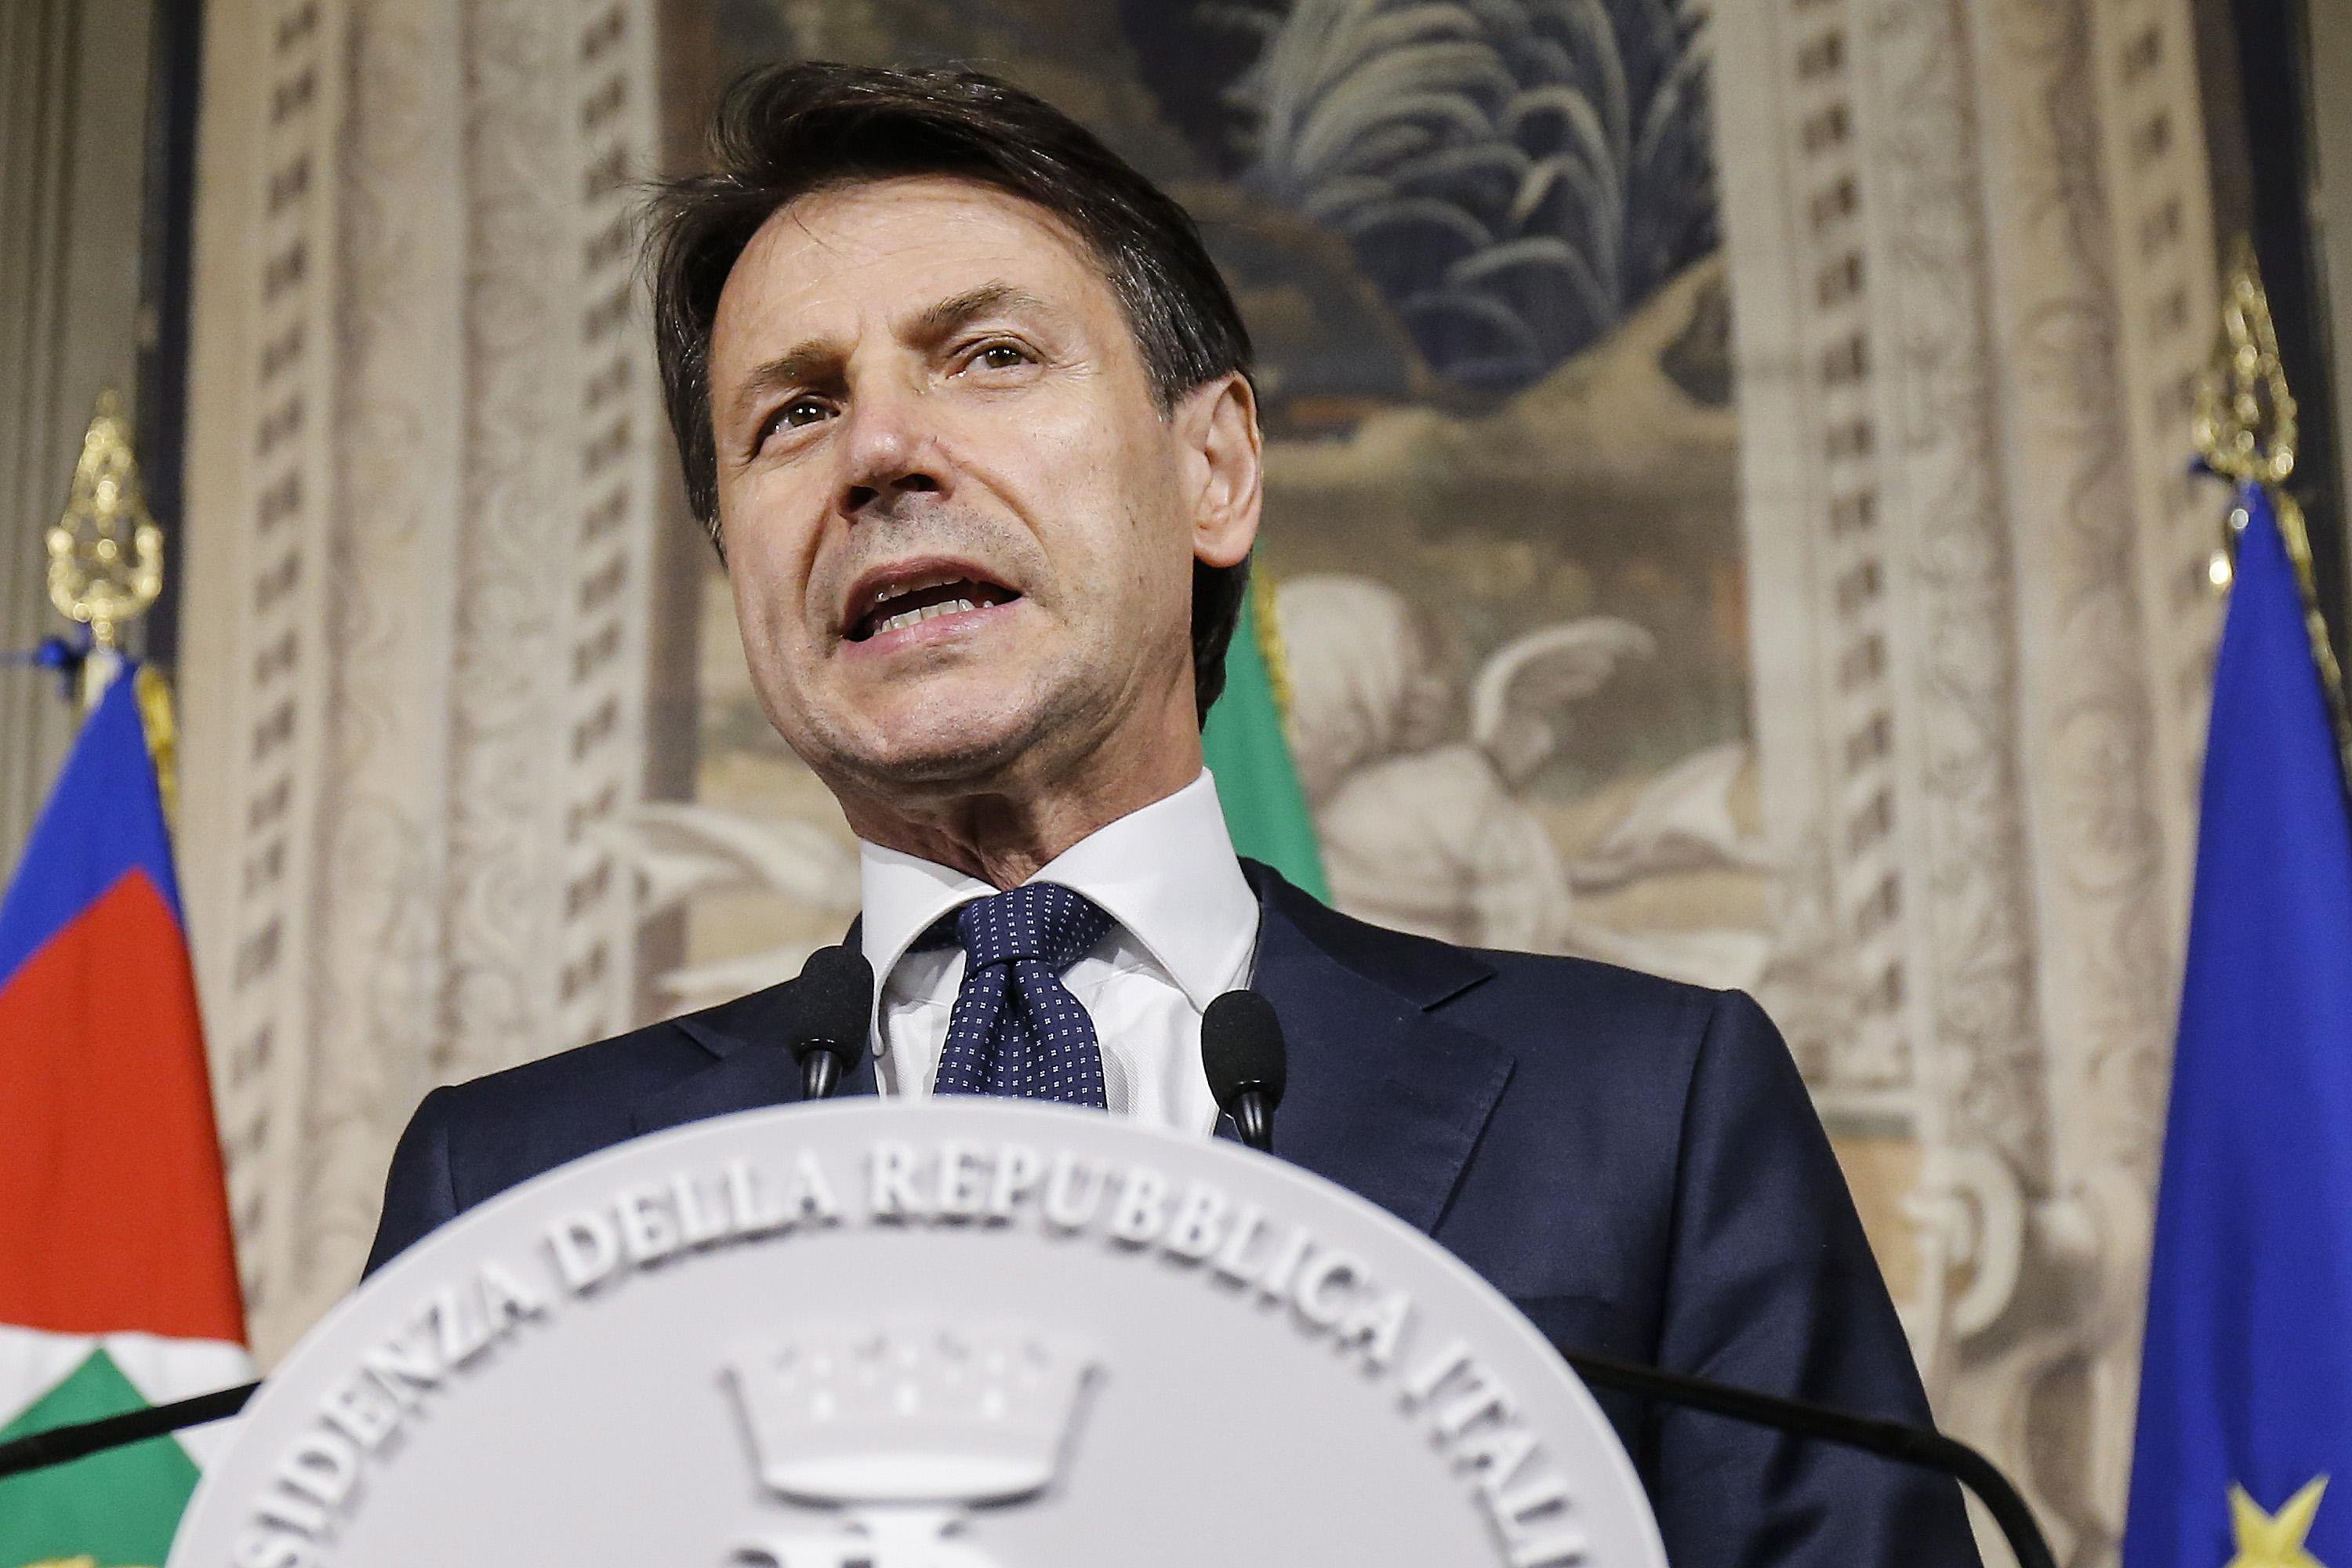 Giuseppe Conte jurou hoje como novo primeiro-ministro de Itália